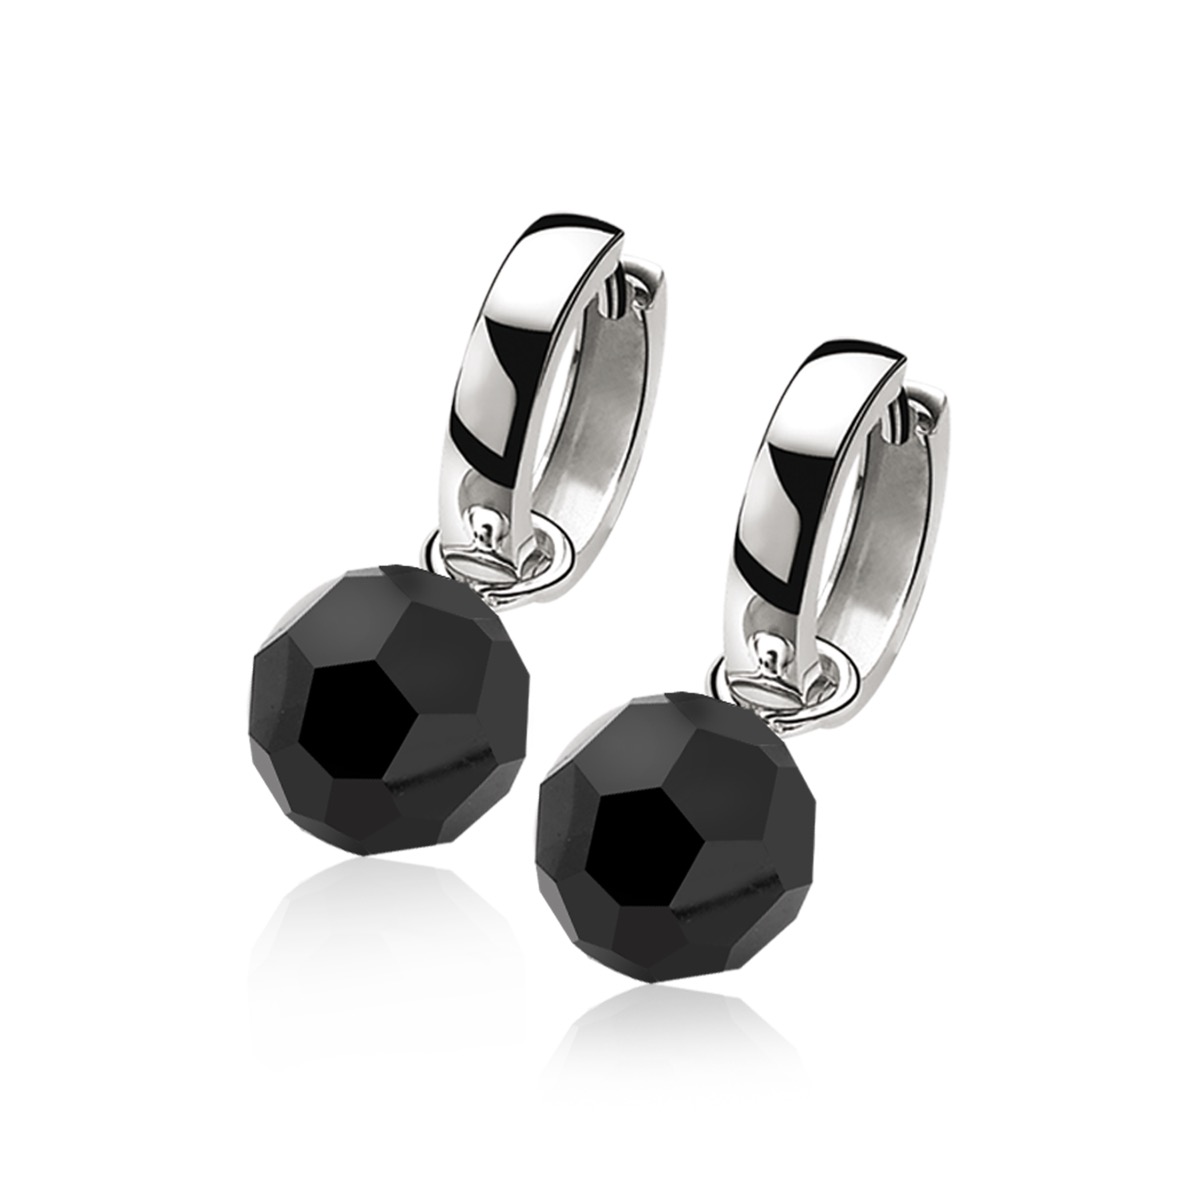 10mm ZINZI Sterling Silver Earrings Pendants Black Bead ZICH266Z (excl. hoop earrings)